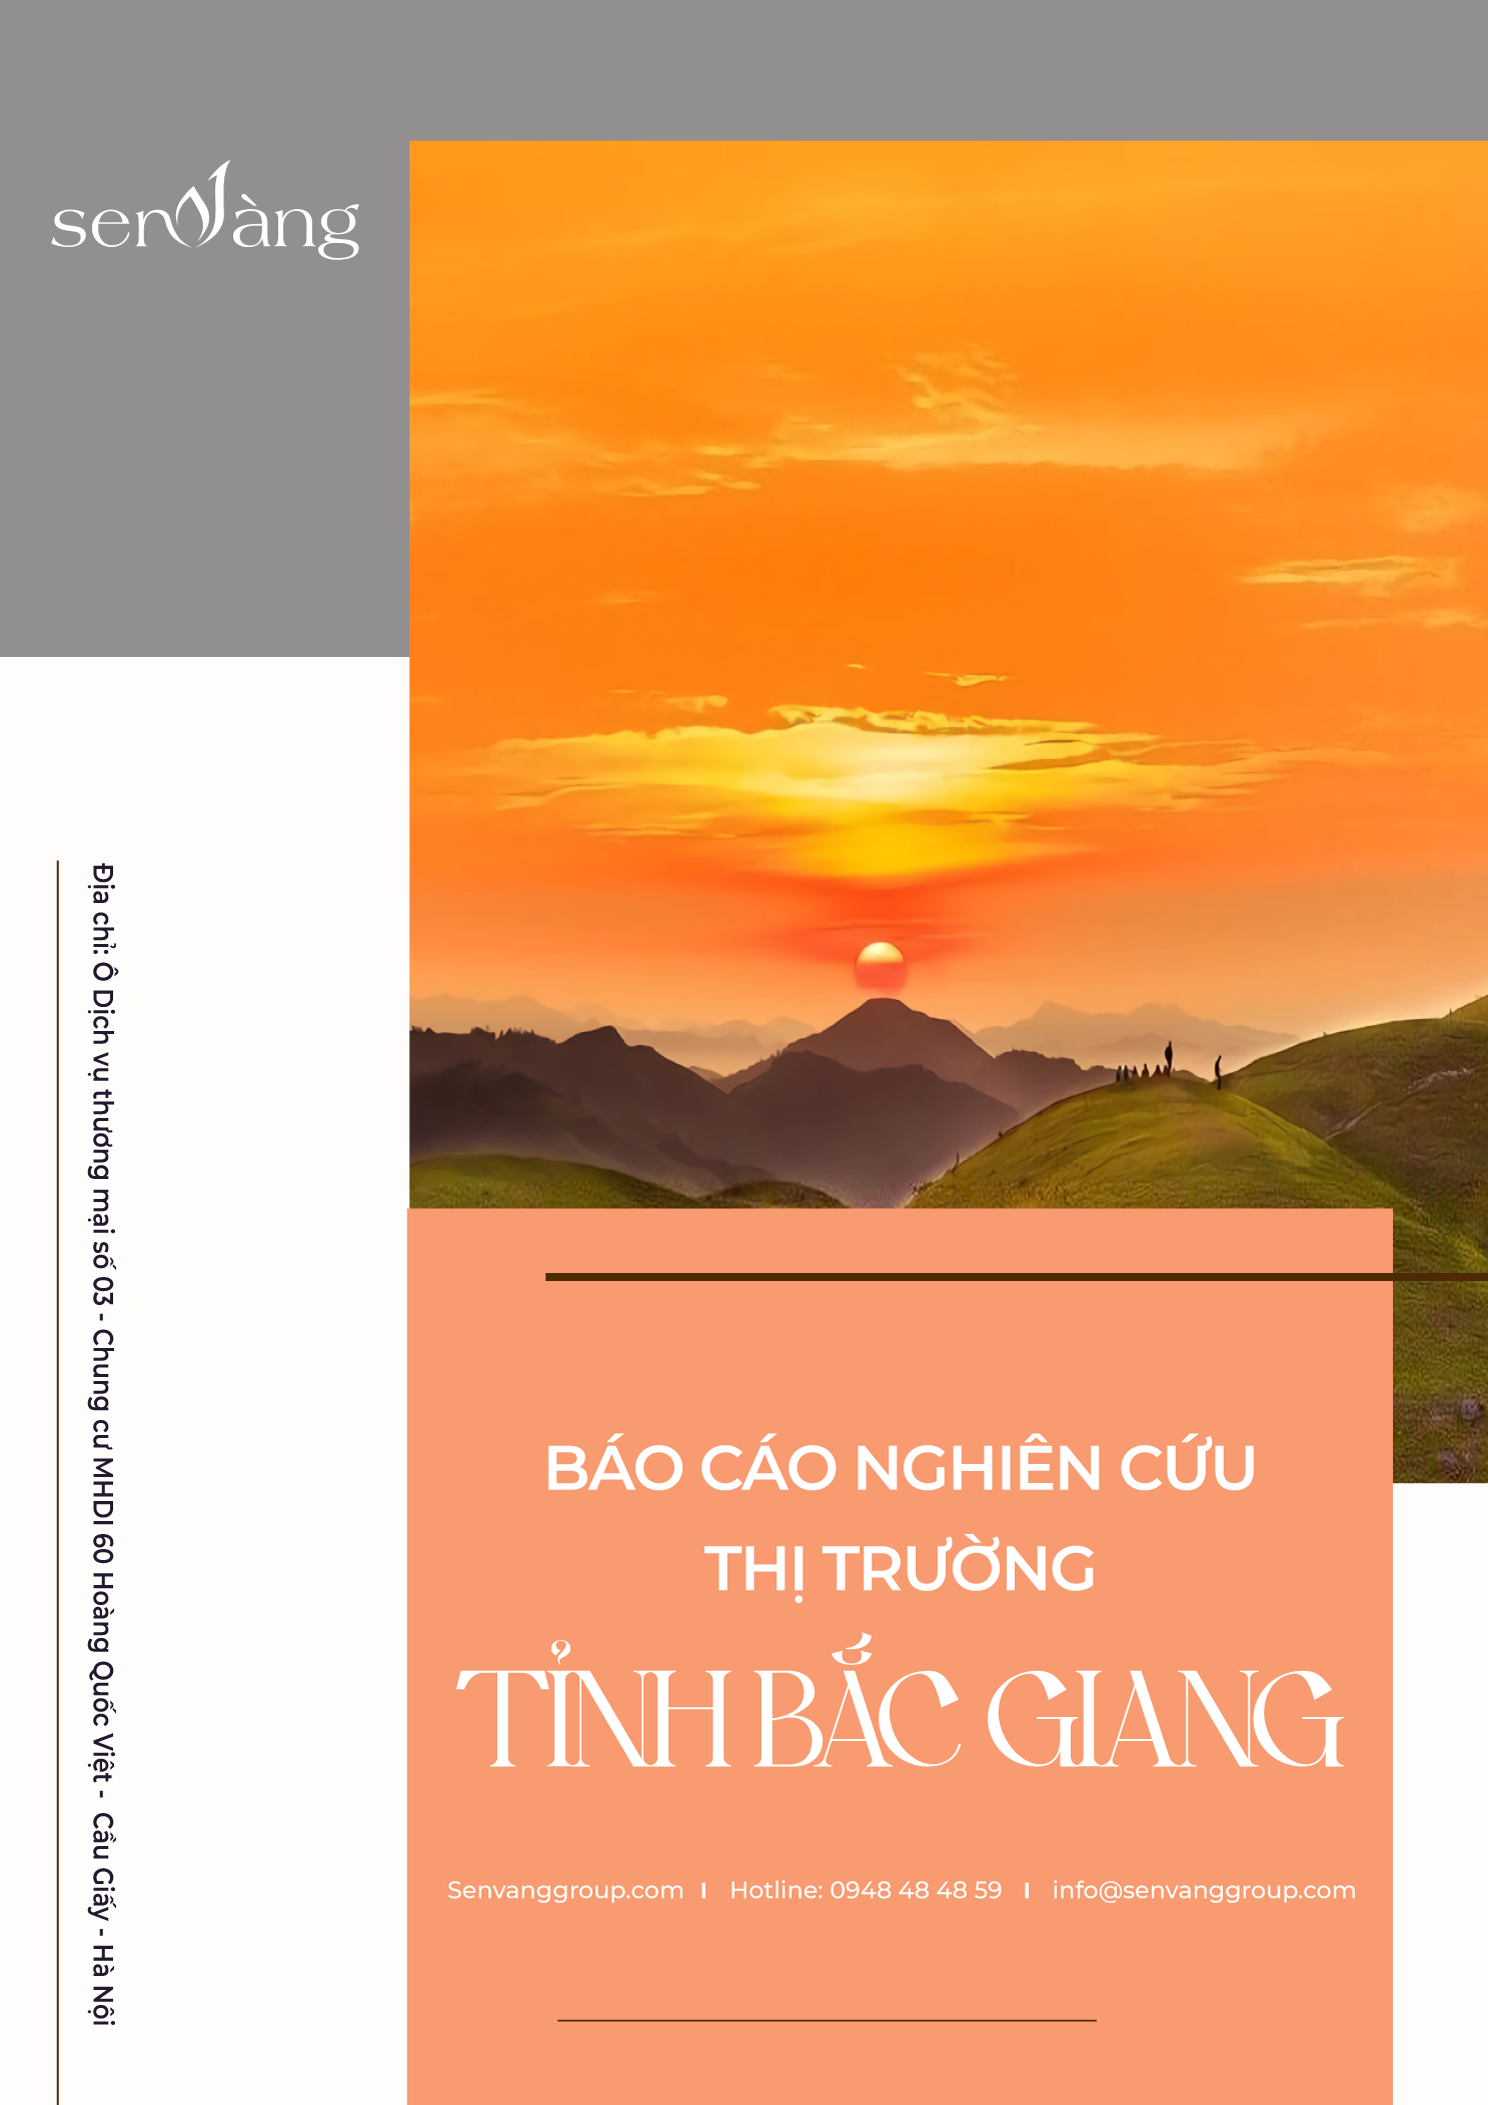 Báo cáo nghiên cứu thị trường tỉnh Bắc Giang